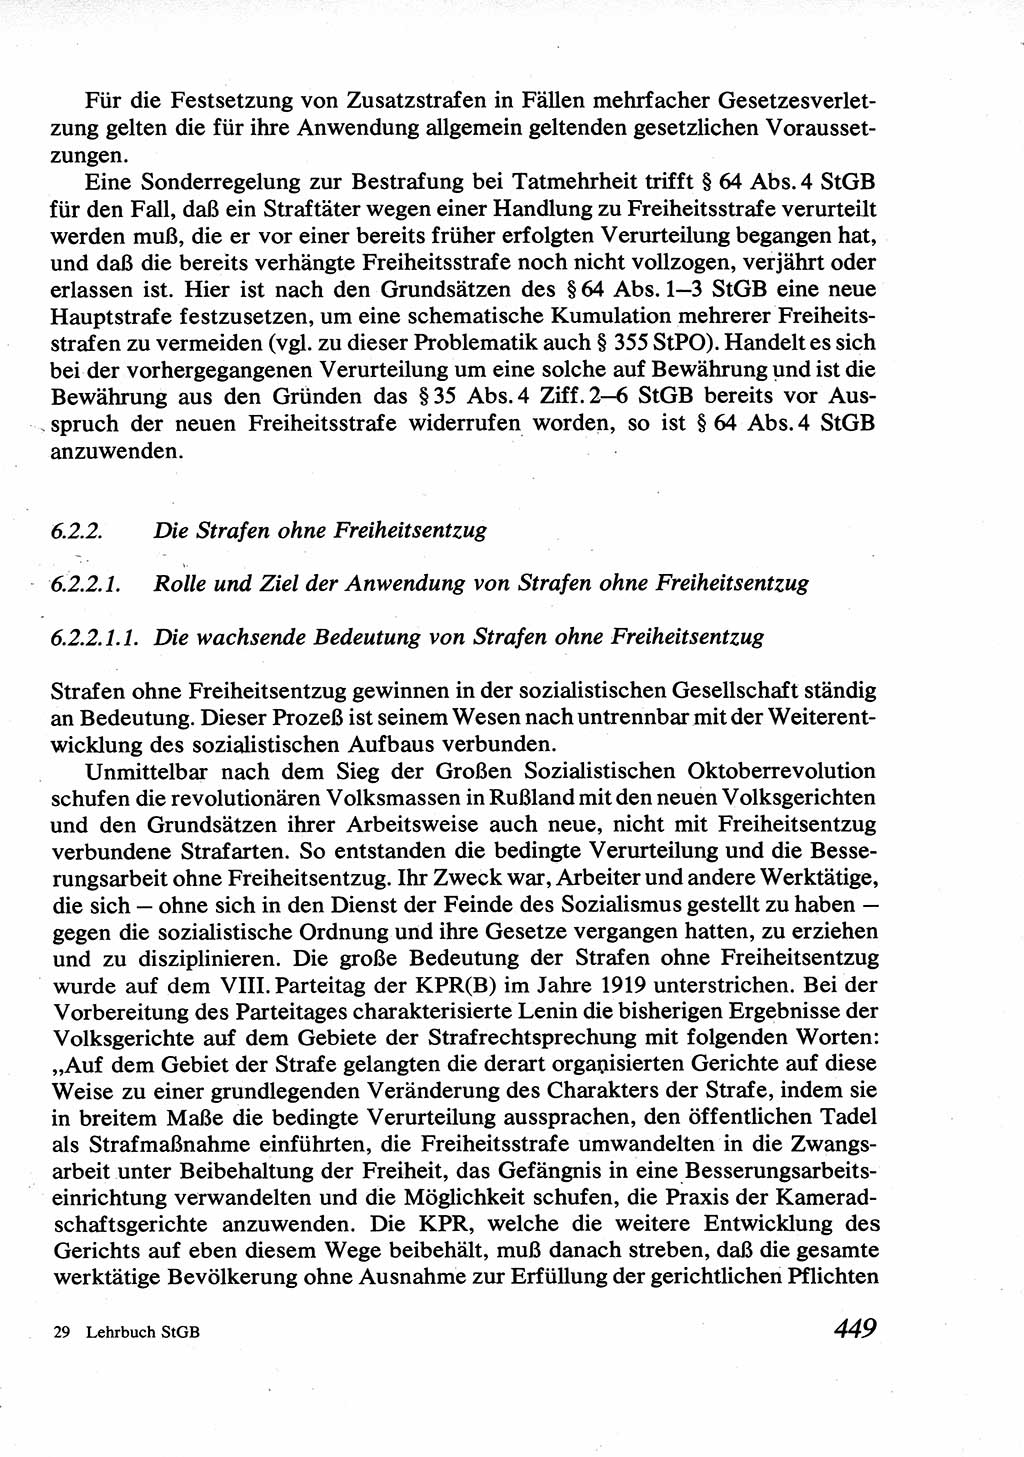 Strafrecht [Deutsche Demokratische Republik (DDR)], Allgemeiner Teil, Lehrbuch 1976, Seite 449 (Strafr. DDR AT Lb. 1976, S. 449)